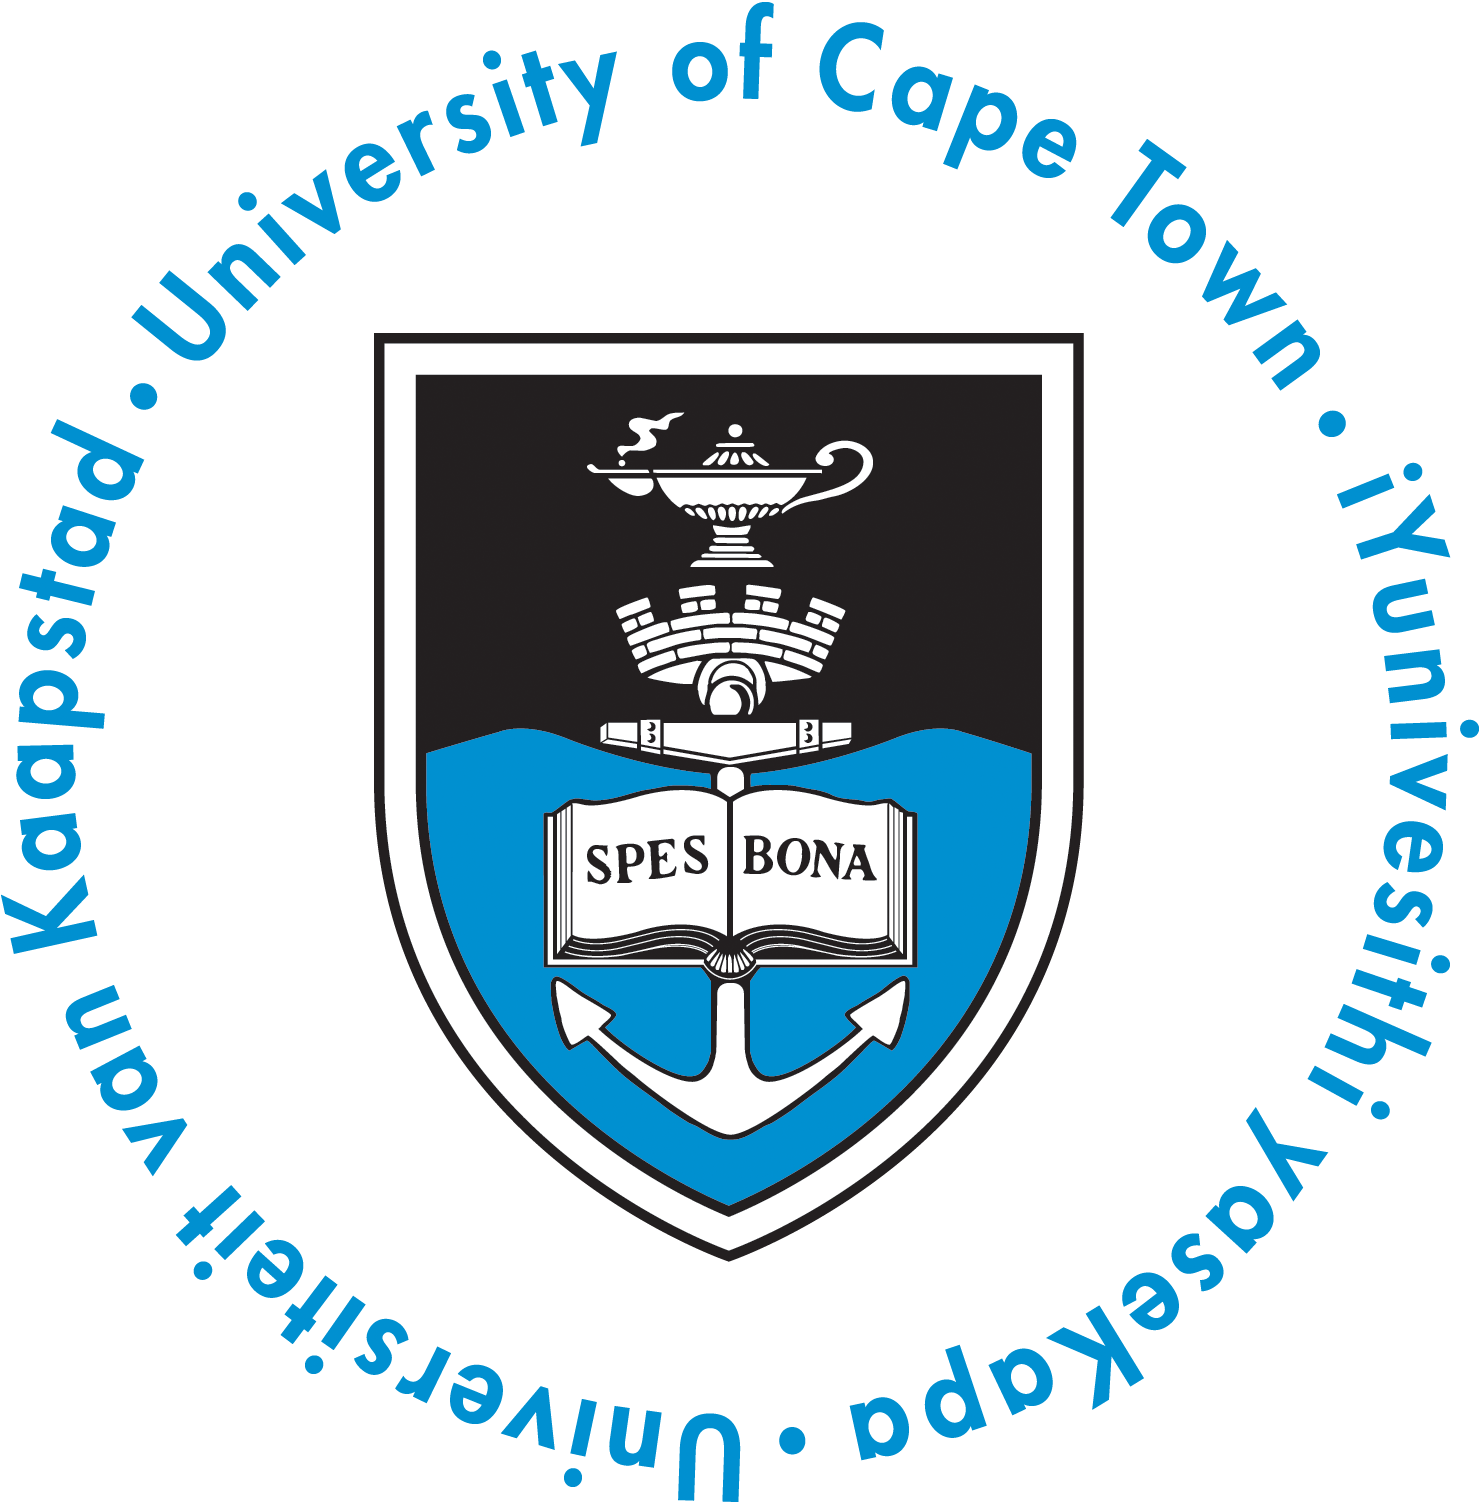 UCT Mastercard Foundation Scholarship Application logo